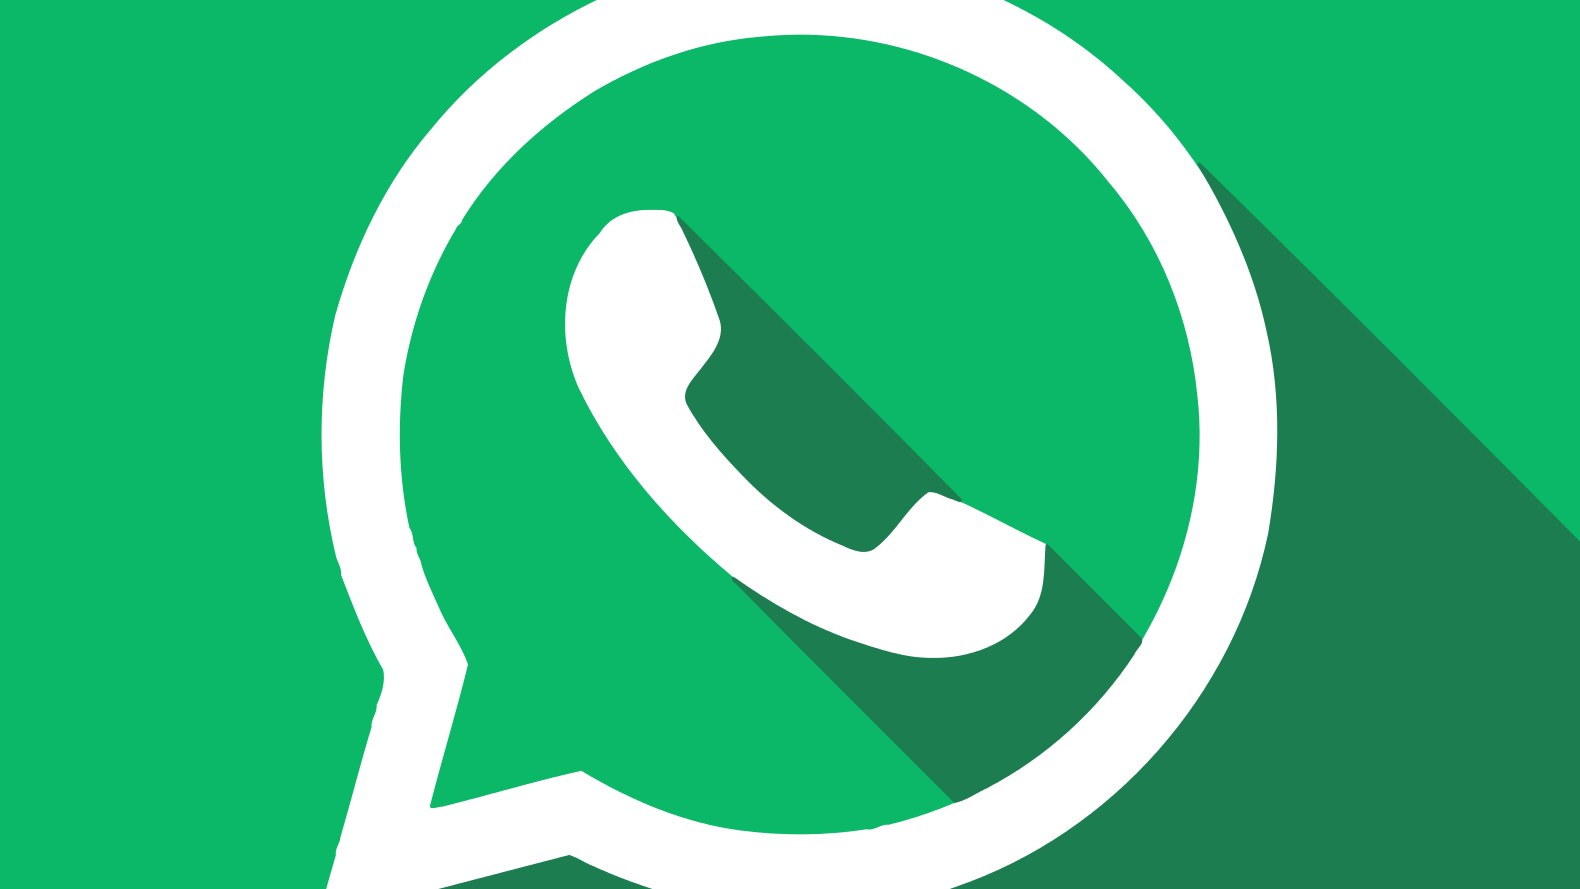 Testamos o WhatsApp GB  Afinal, é seguro ou é roubada? - Canaltech